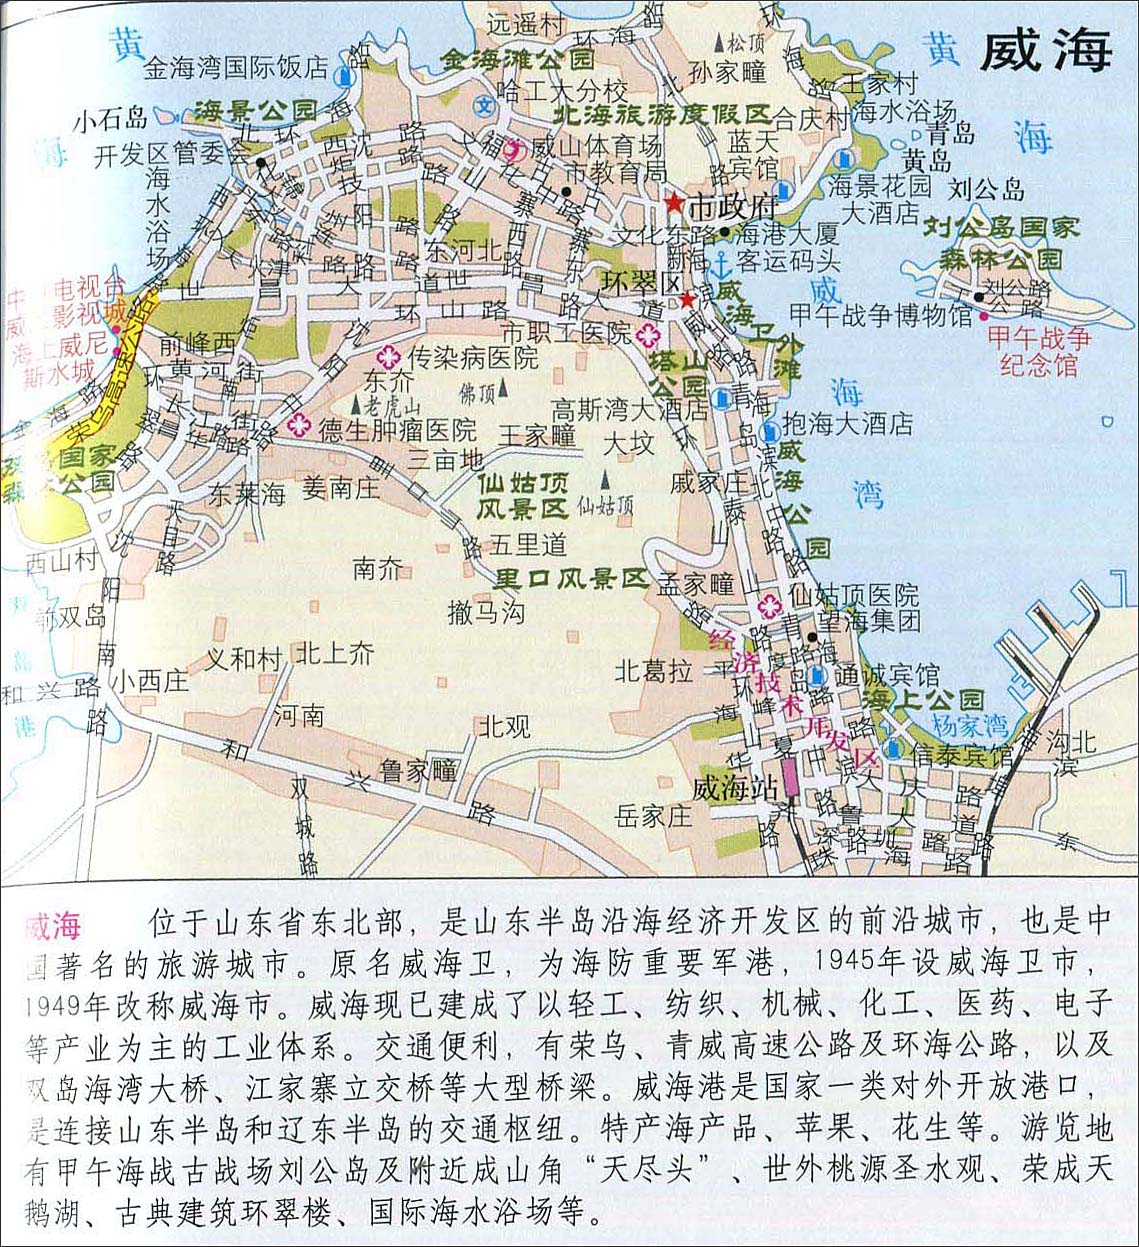 中国地图 山东 威海市 >> 威海地图地形版  相关链接: 济南市  青岛市图片